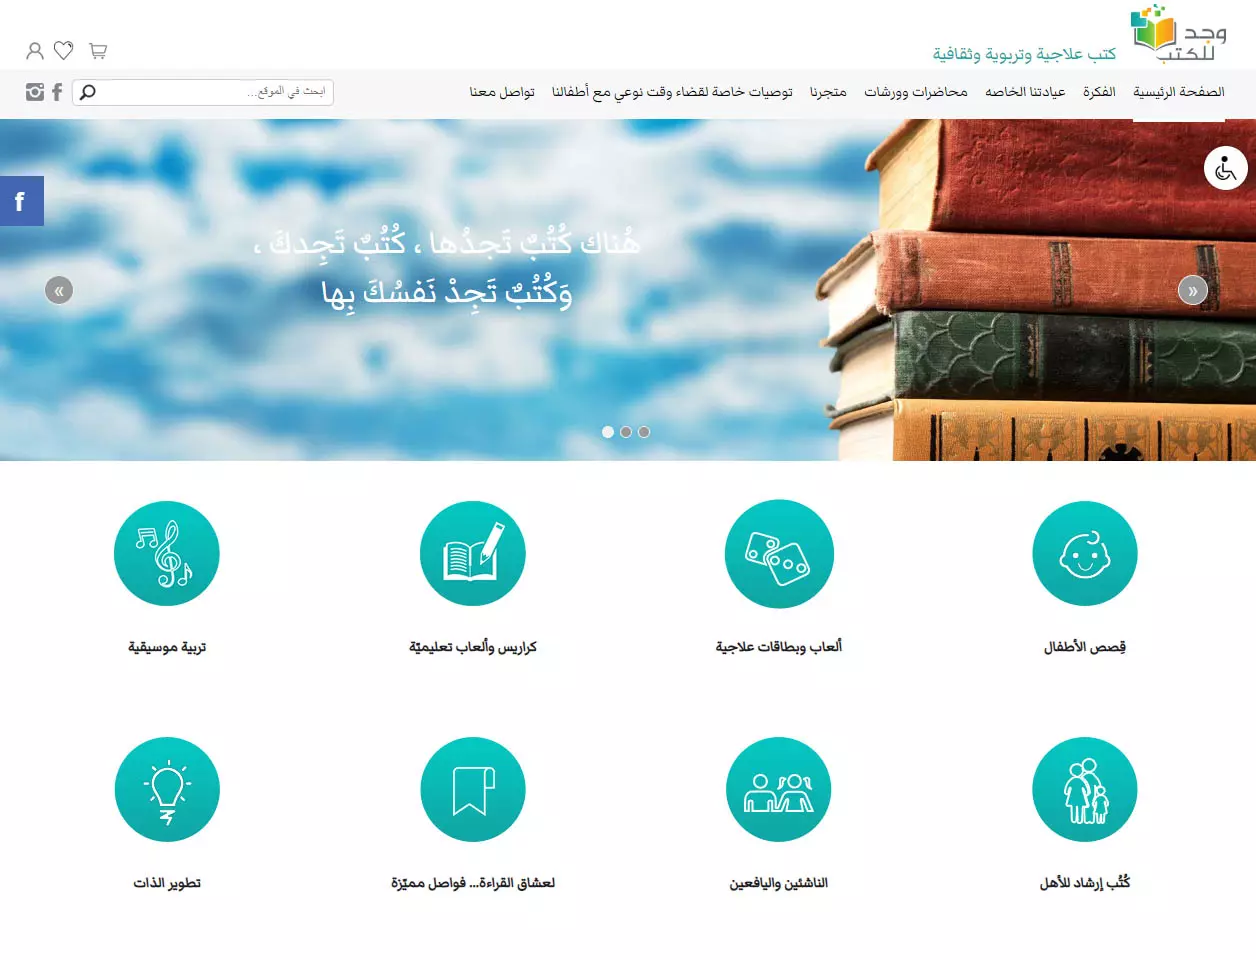 חנות וירטואלית בערבית לספרים Wajd Books